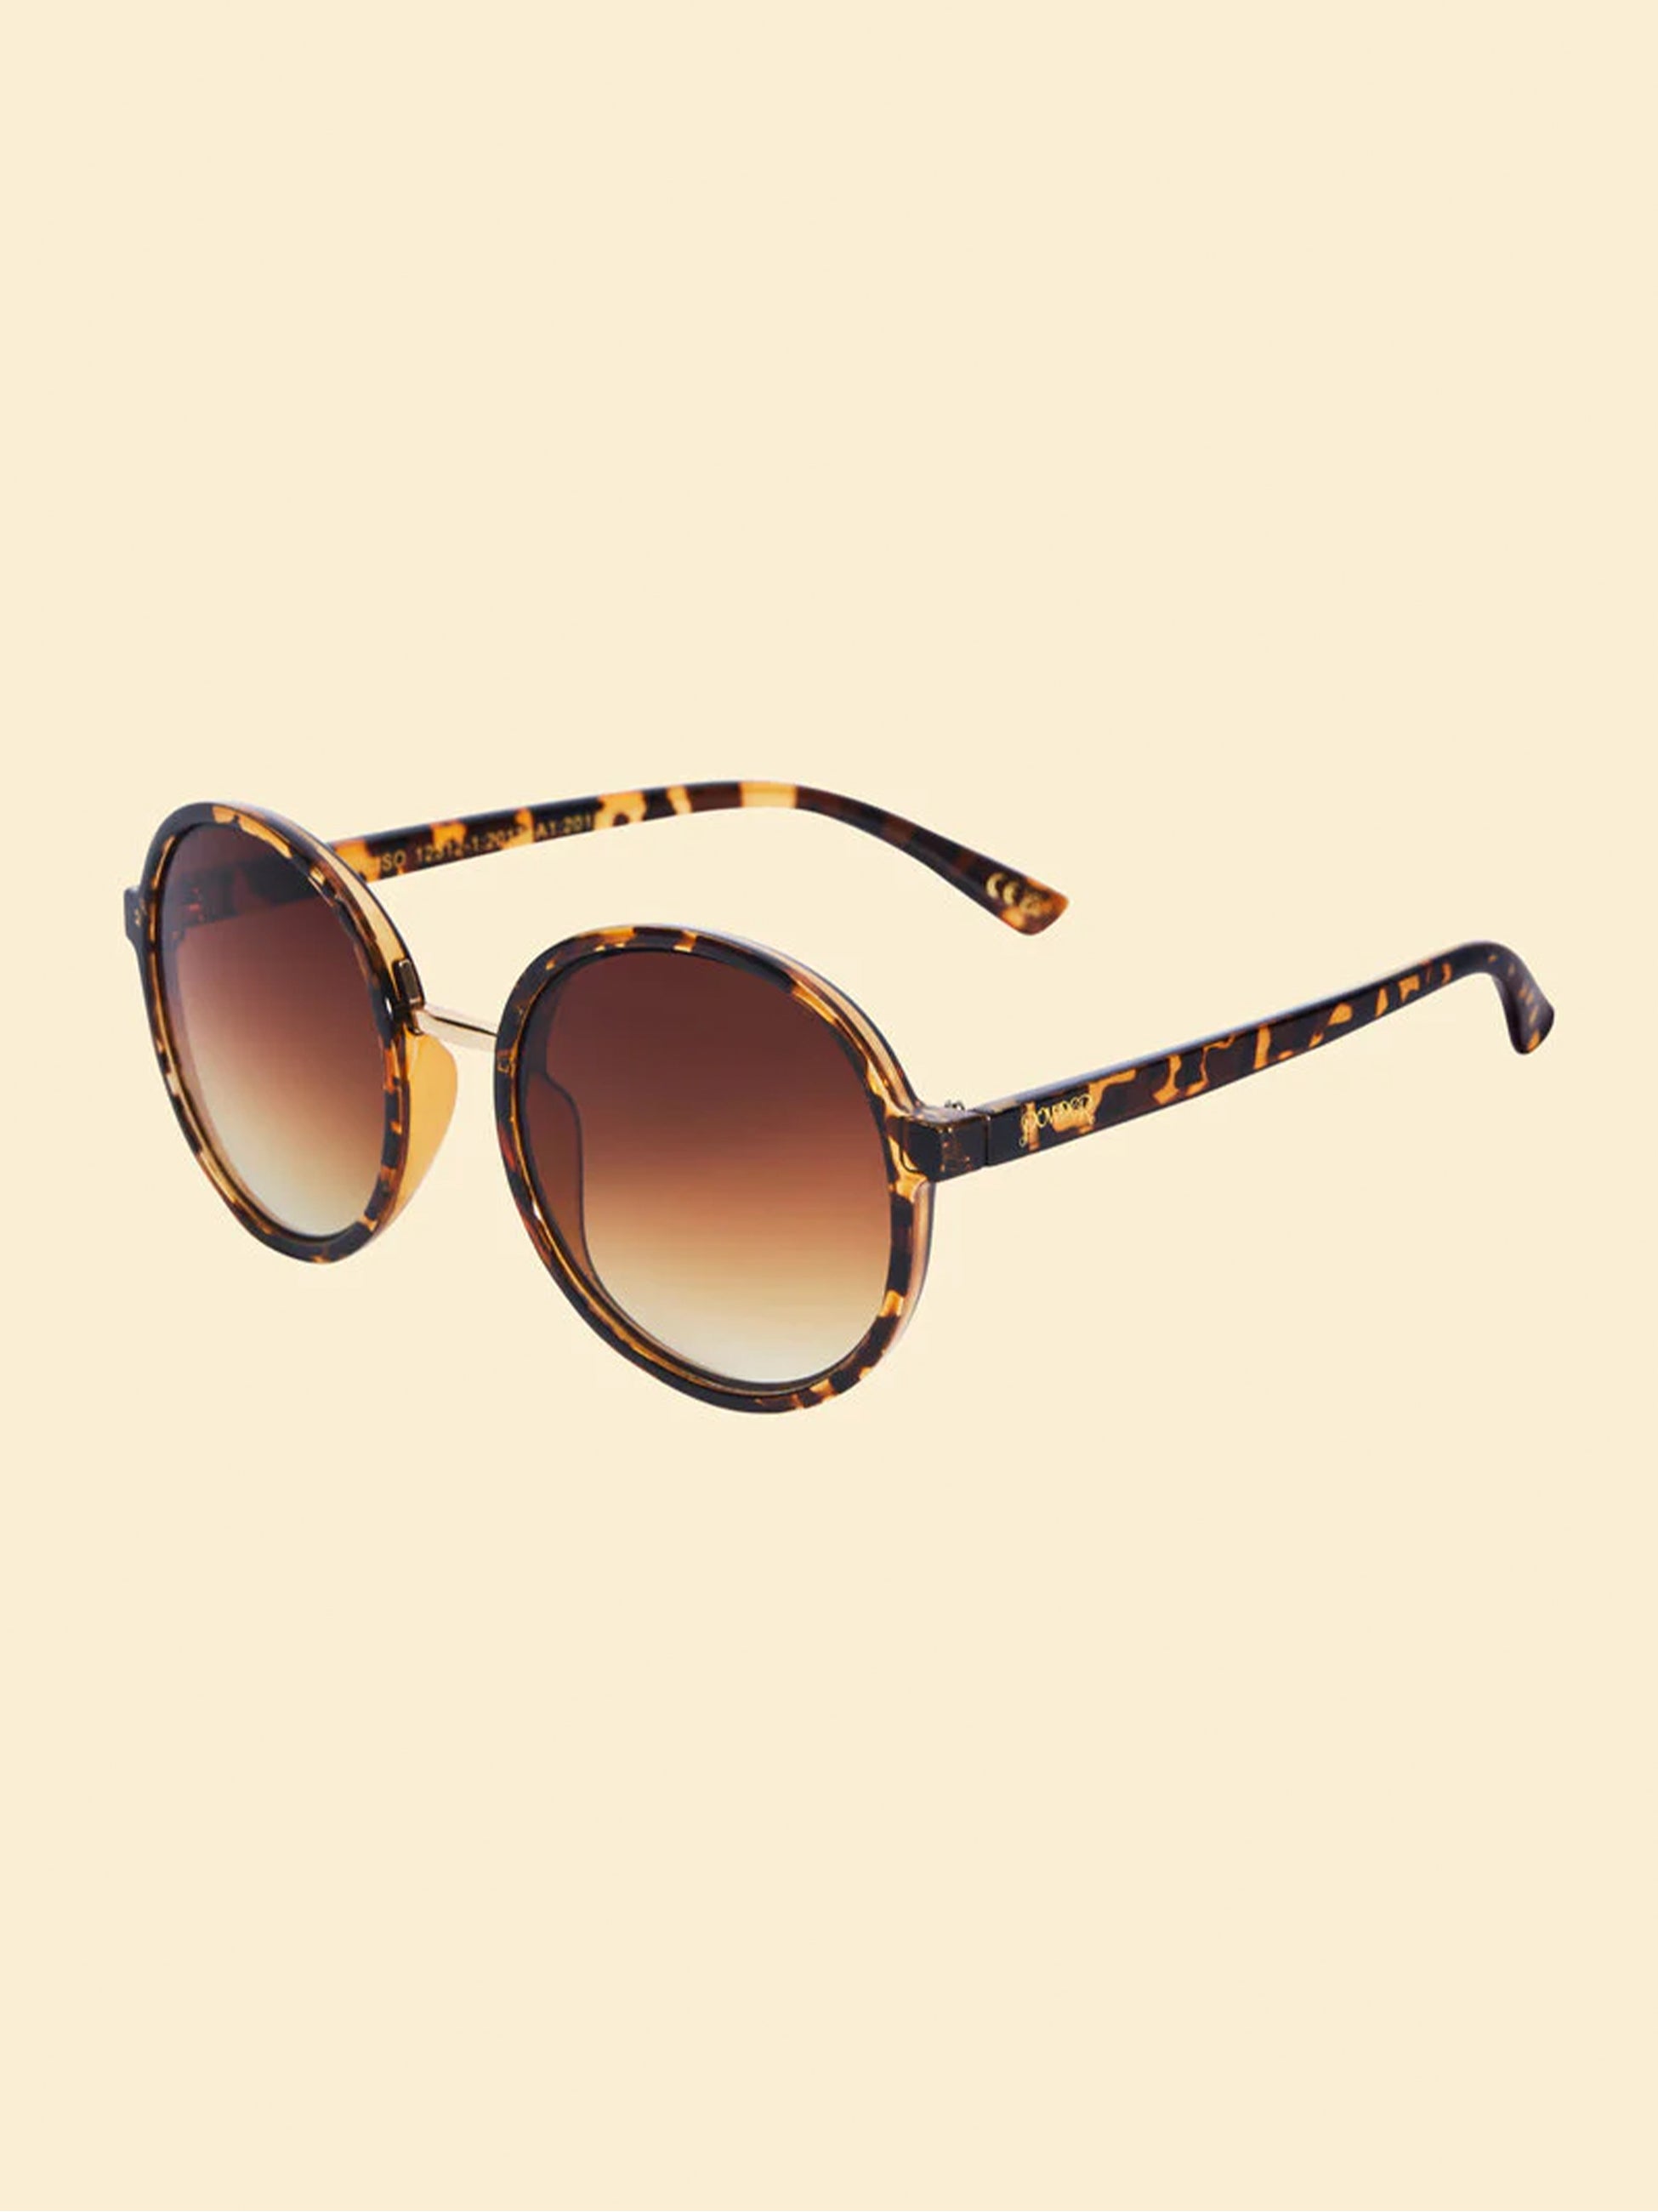 Maribella Ltd Edition Sunglasses - Tortoiseshell